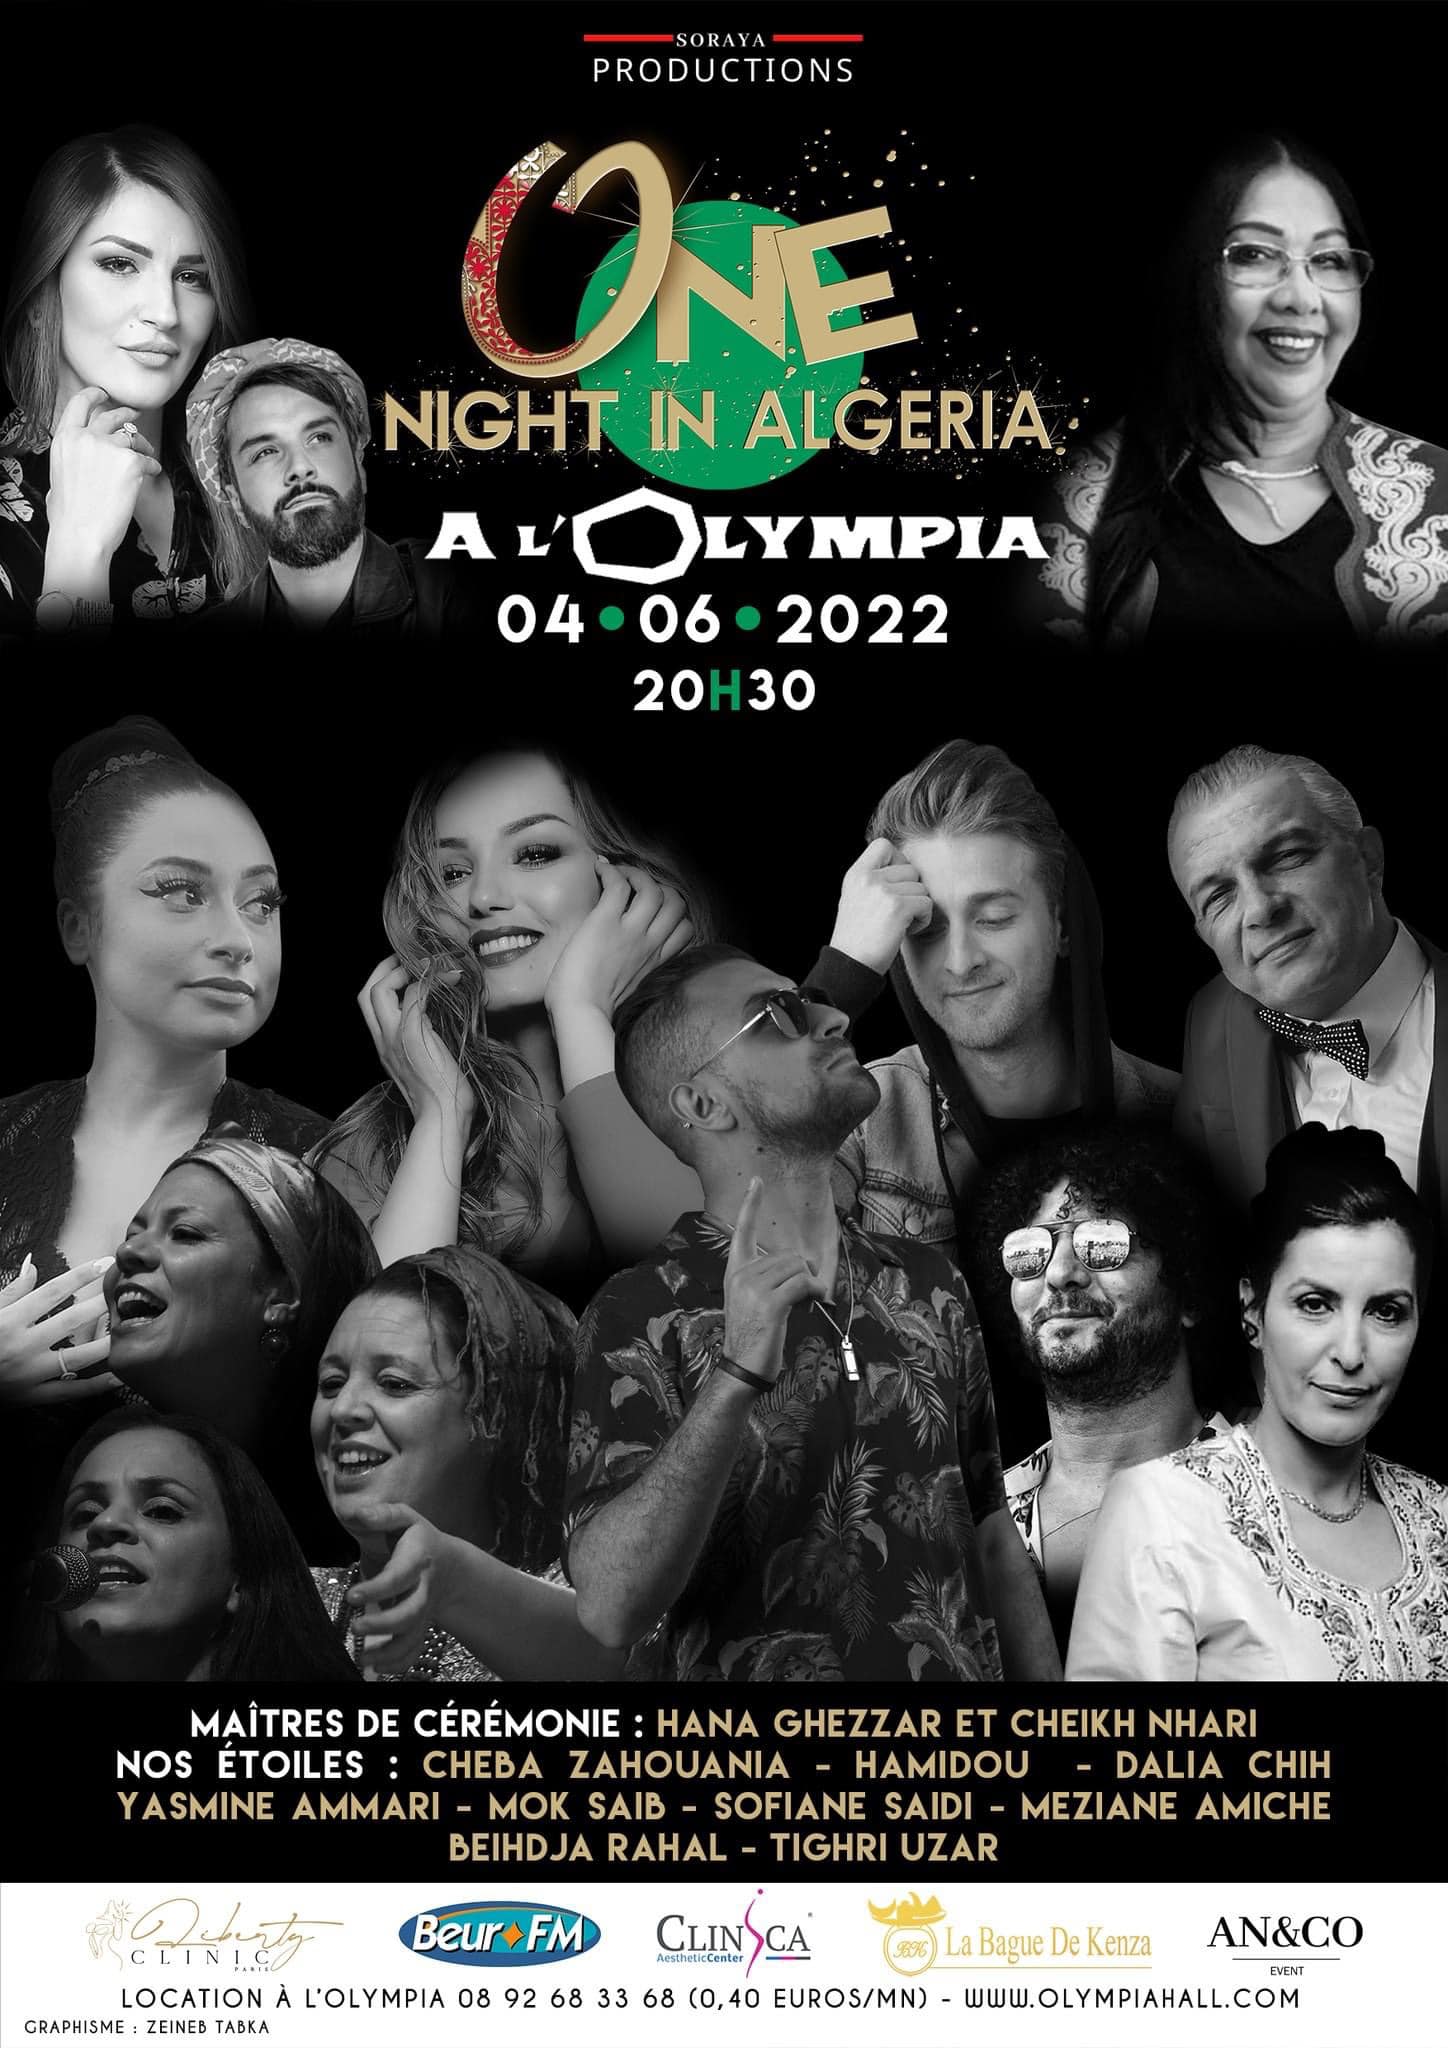 Soirée festive «One Night in Algéria» à l’Olympia, le samedi 4 juin 2022